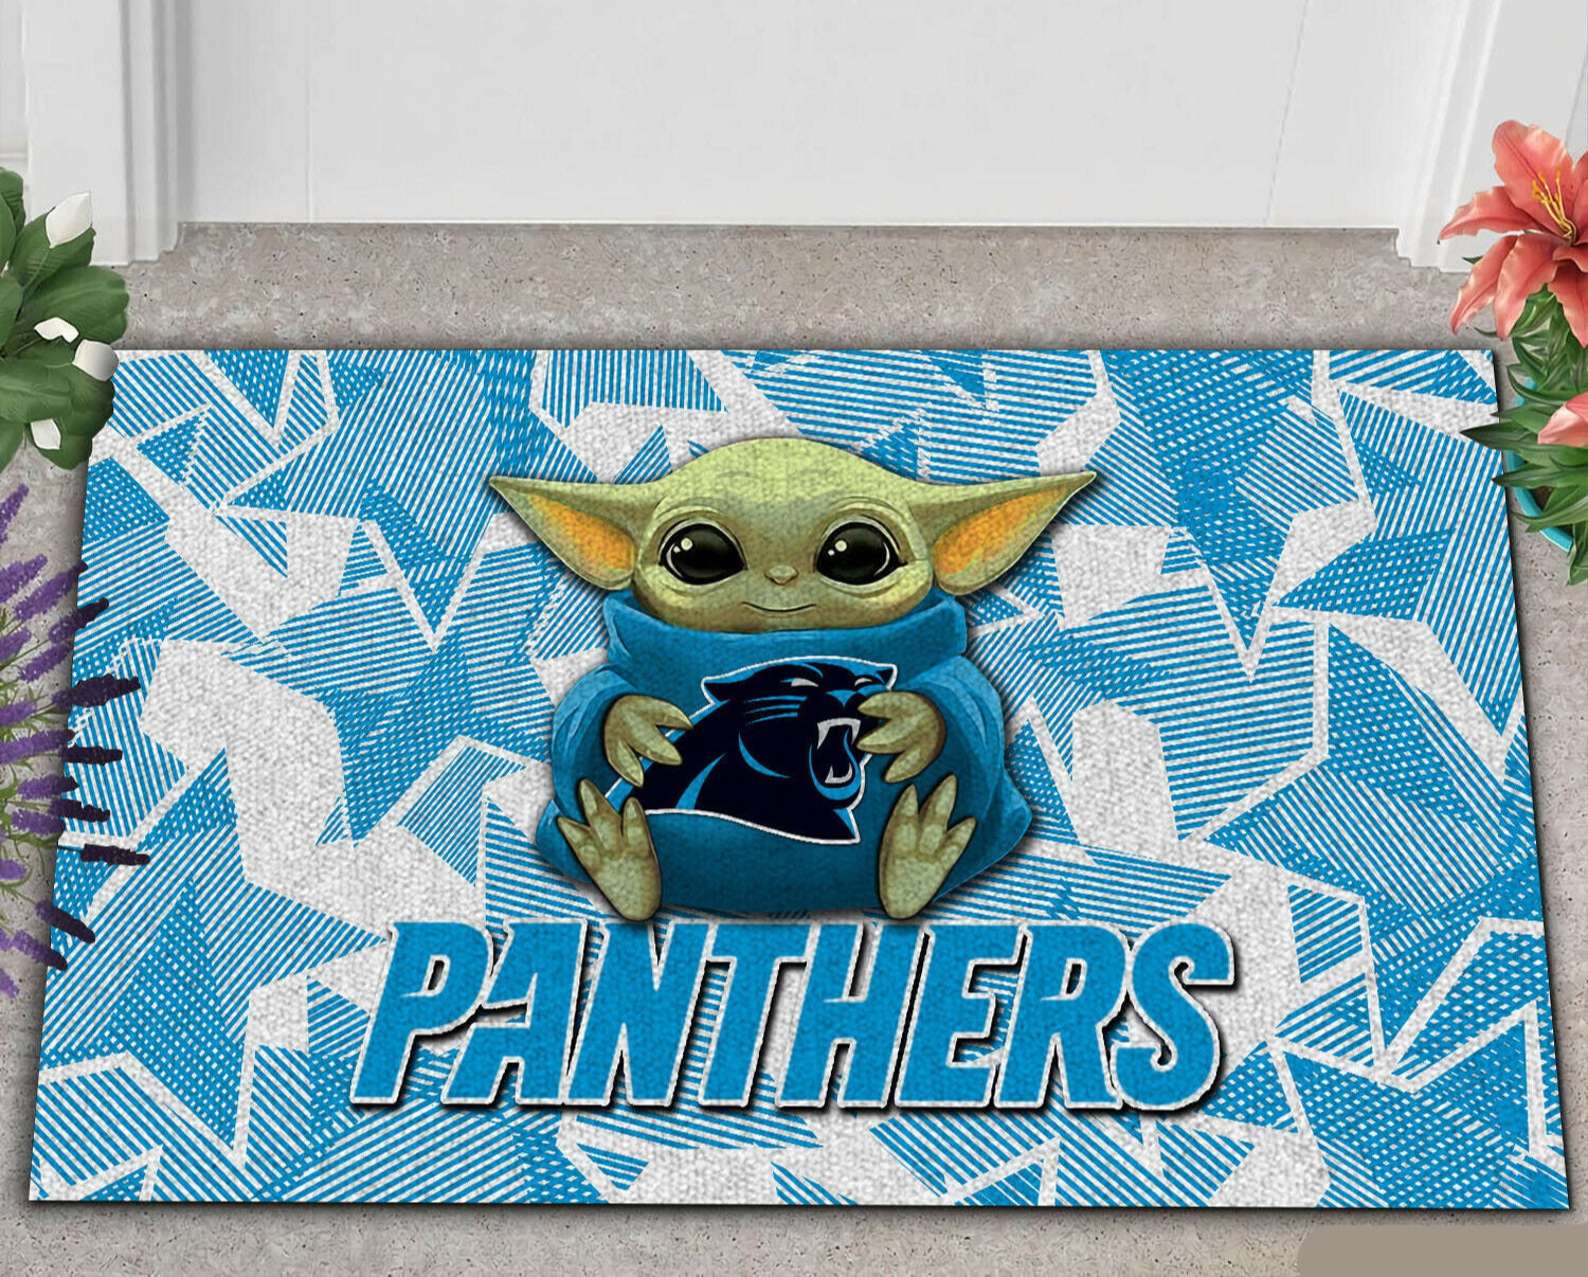 Carolina Panthers Nfl Doormat